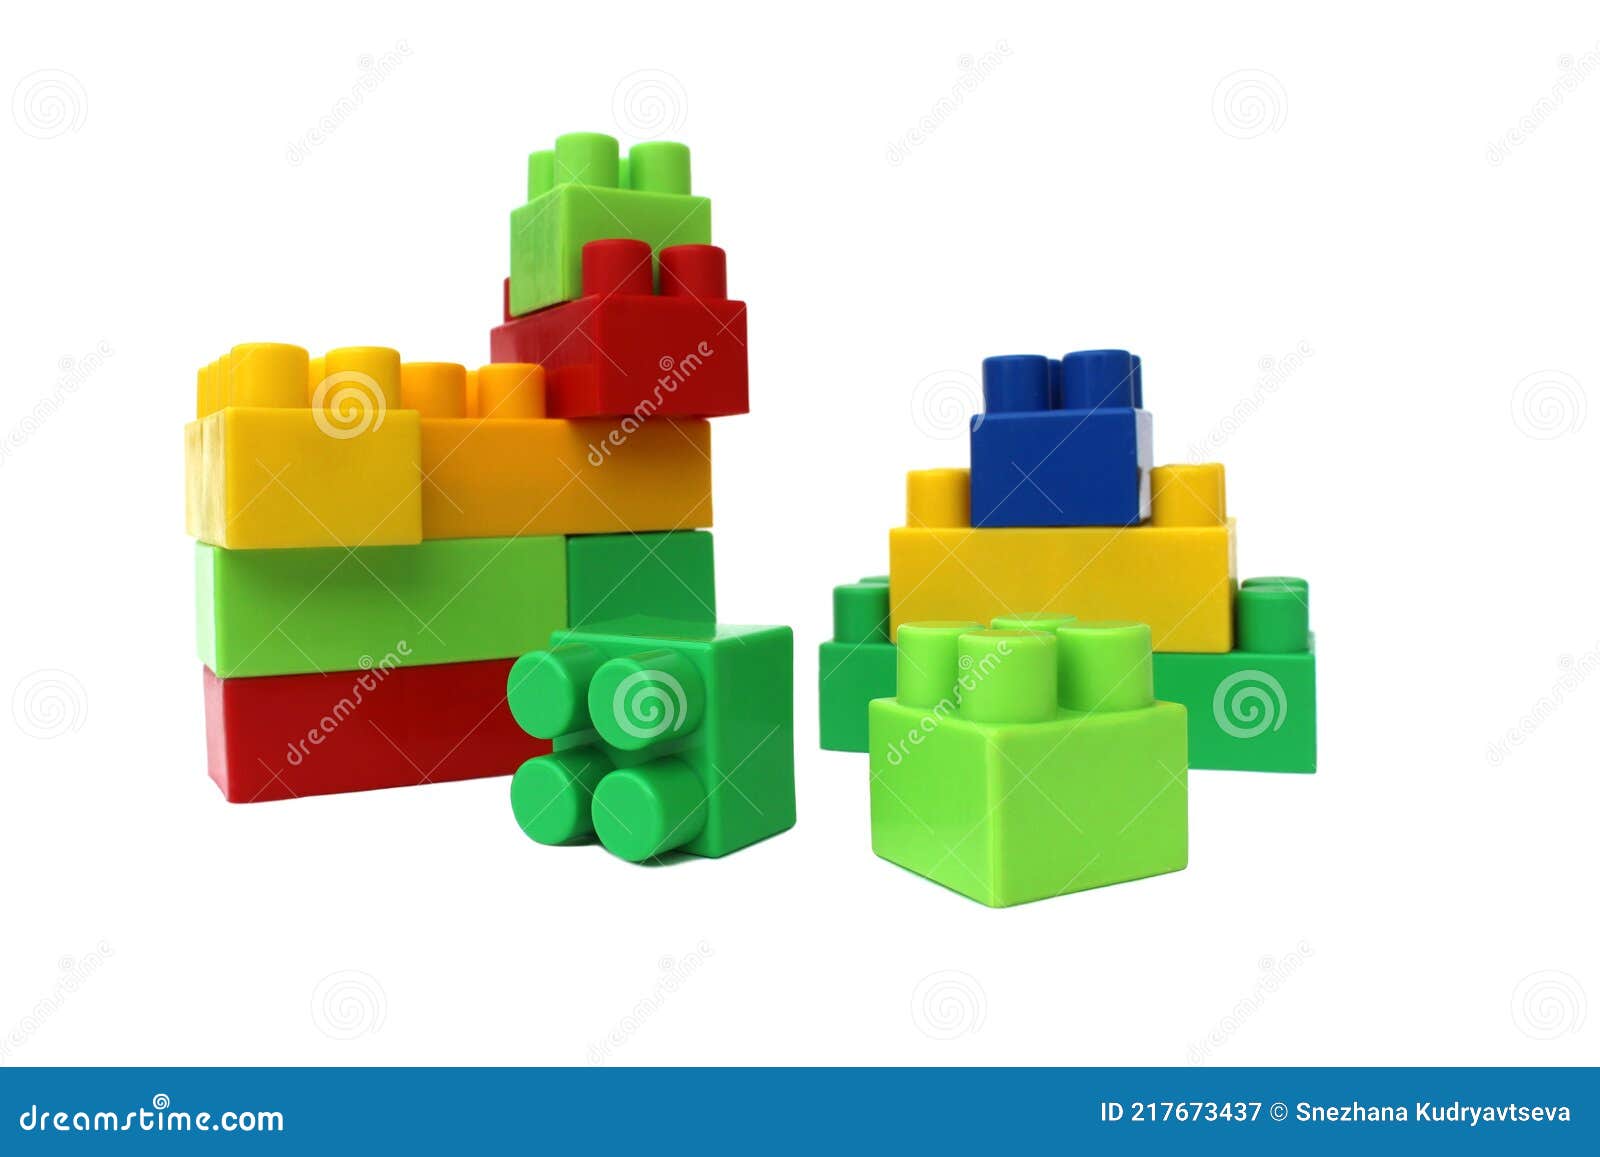 Juegos De Construcción De Plástico Brillante Para Niños Imagen archivo - Imagen de 217673437